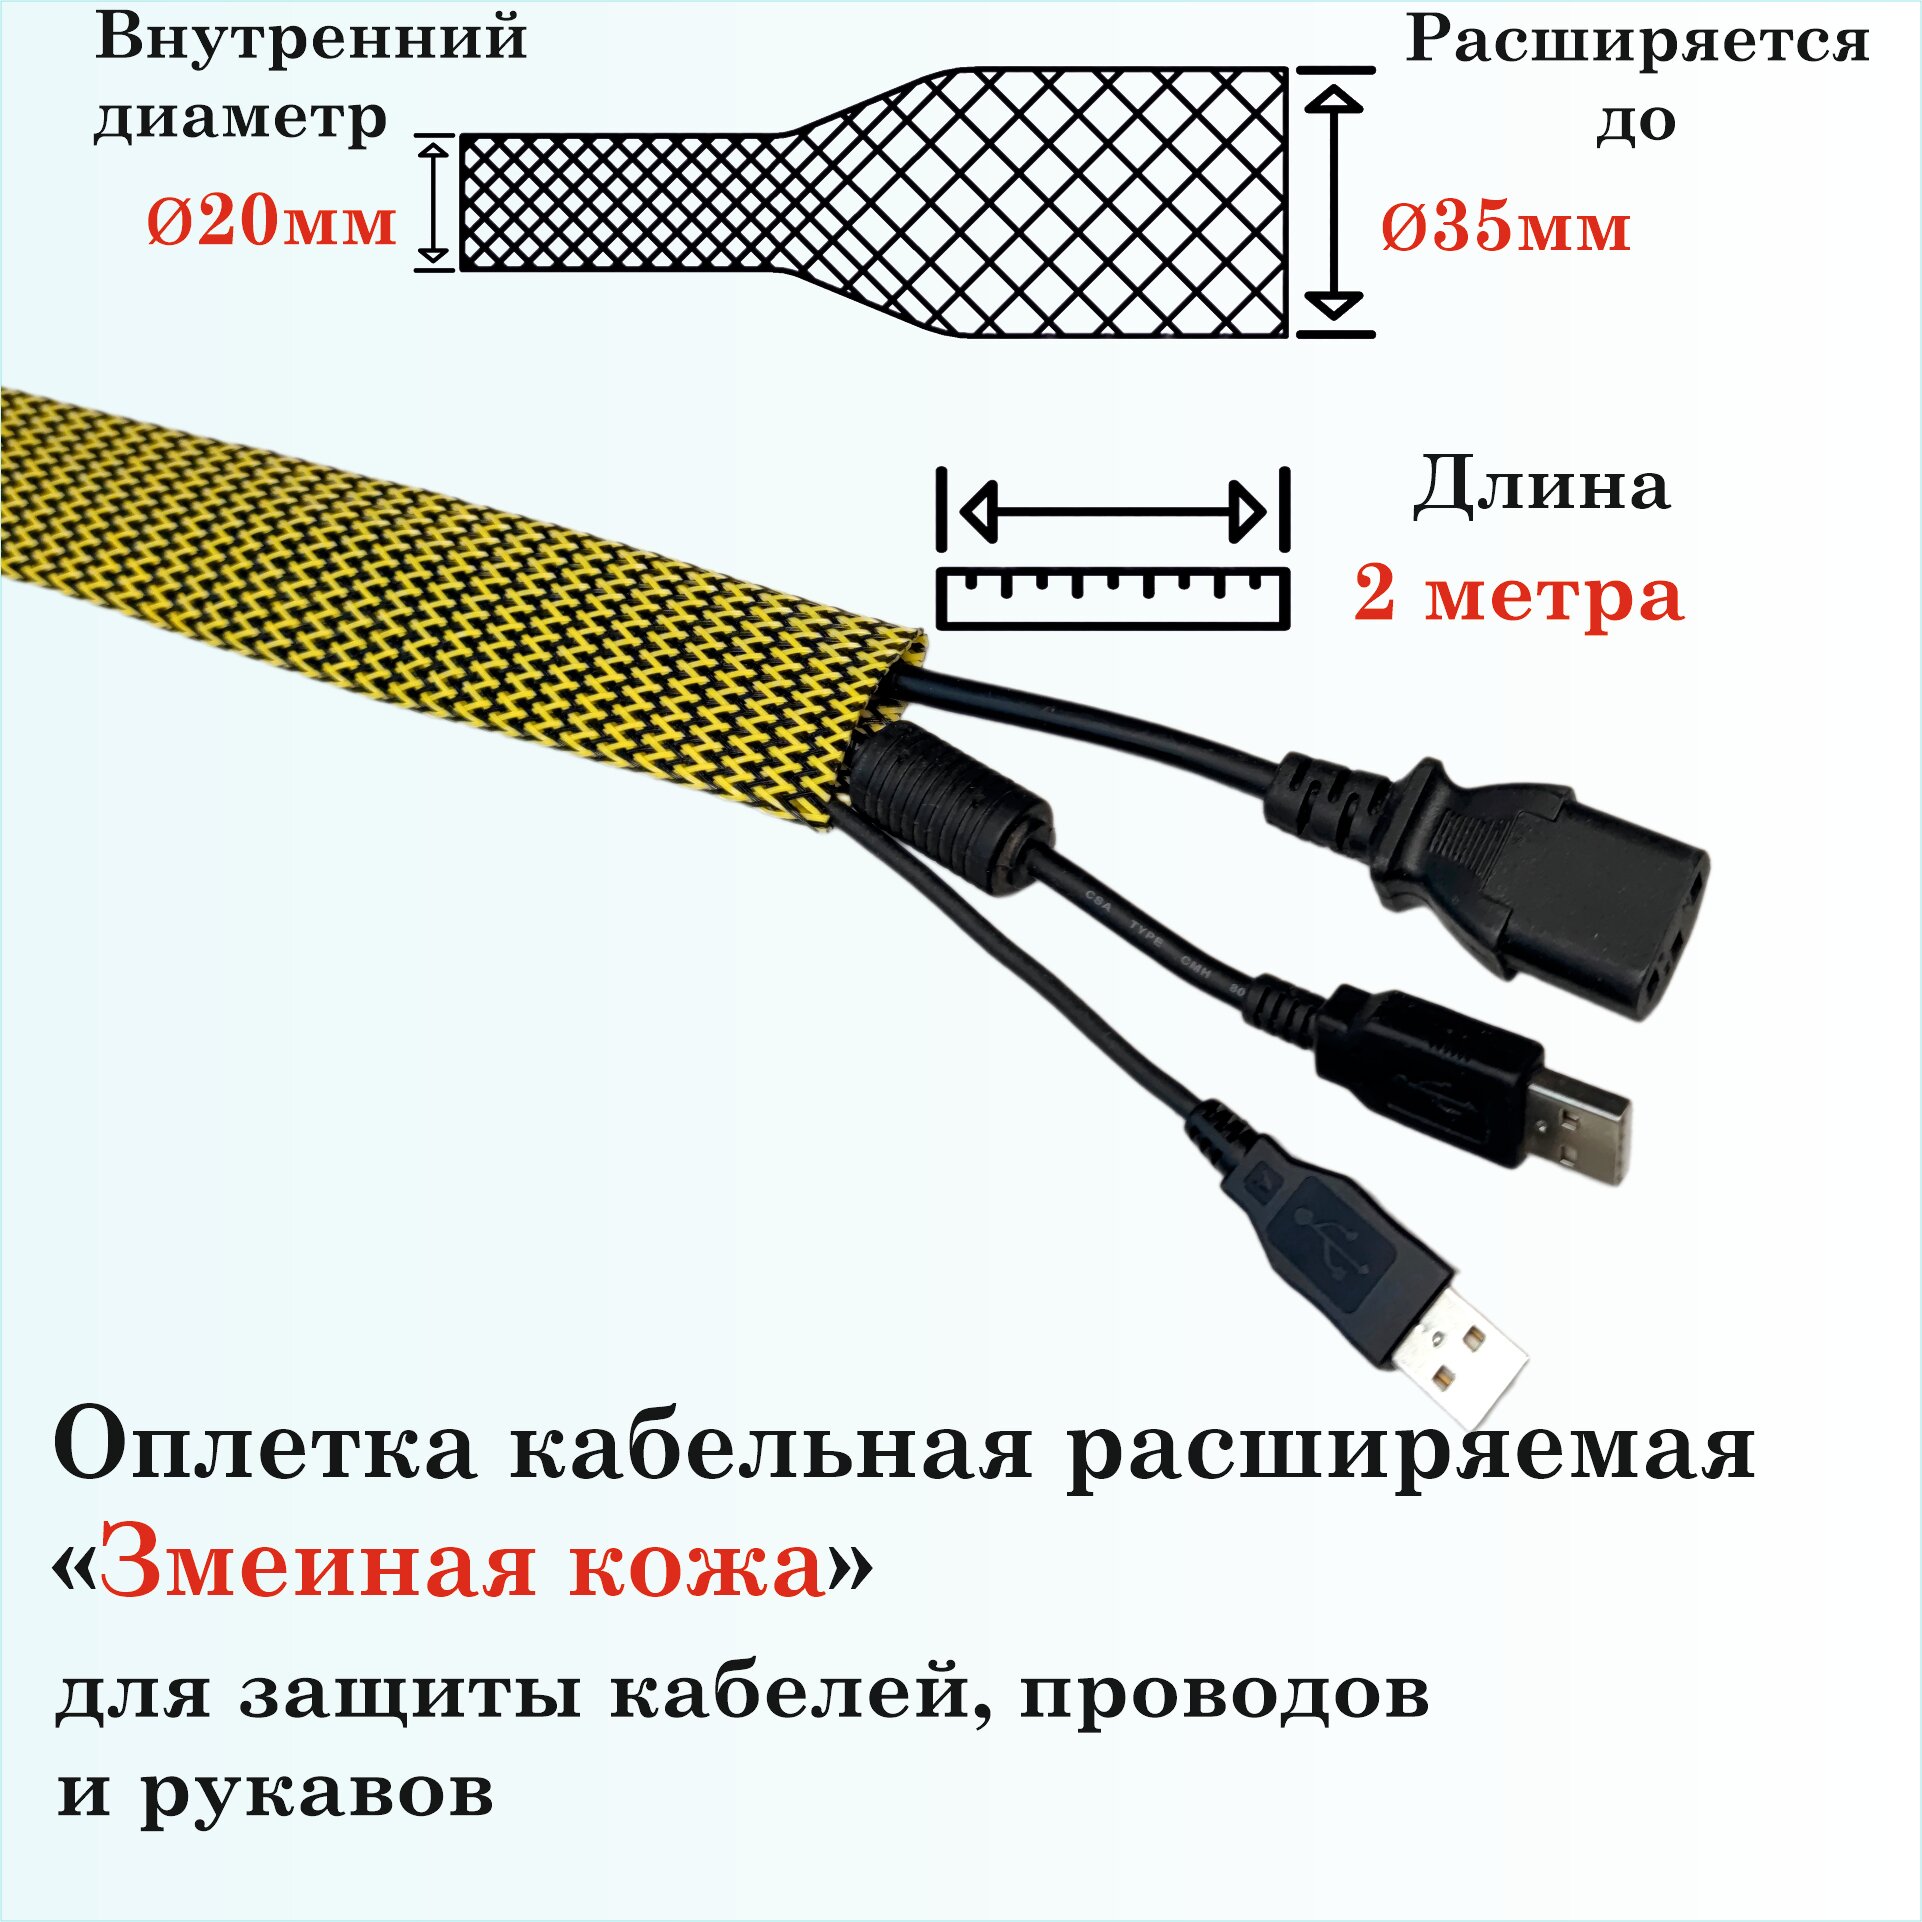 Оплетка кабельная расширяемая для защиты кабелей и проводов "Змеиная кожа" 20мм, 2м, желто-черная